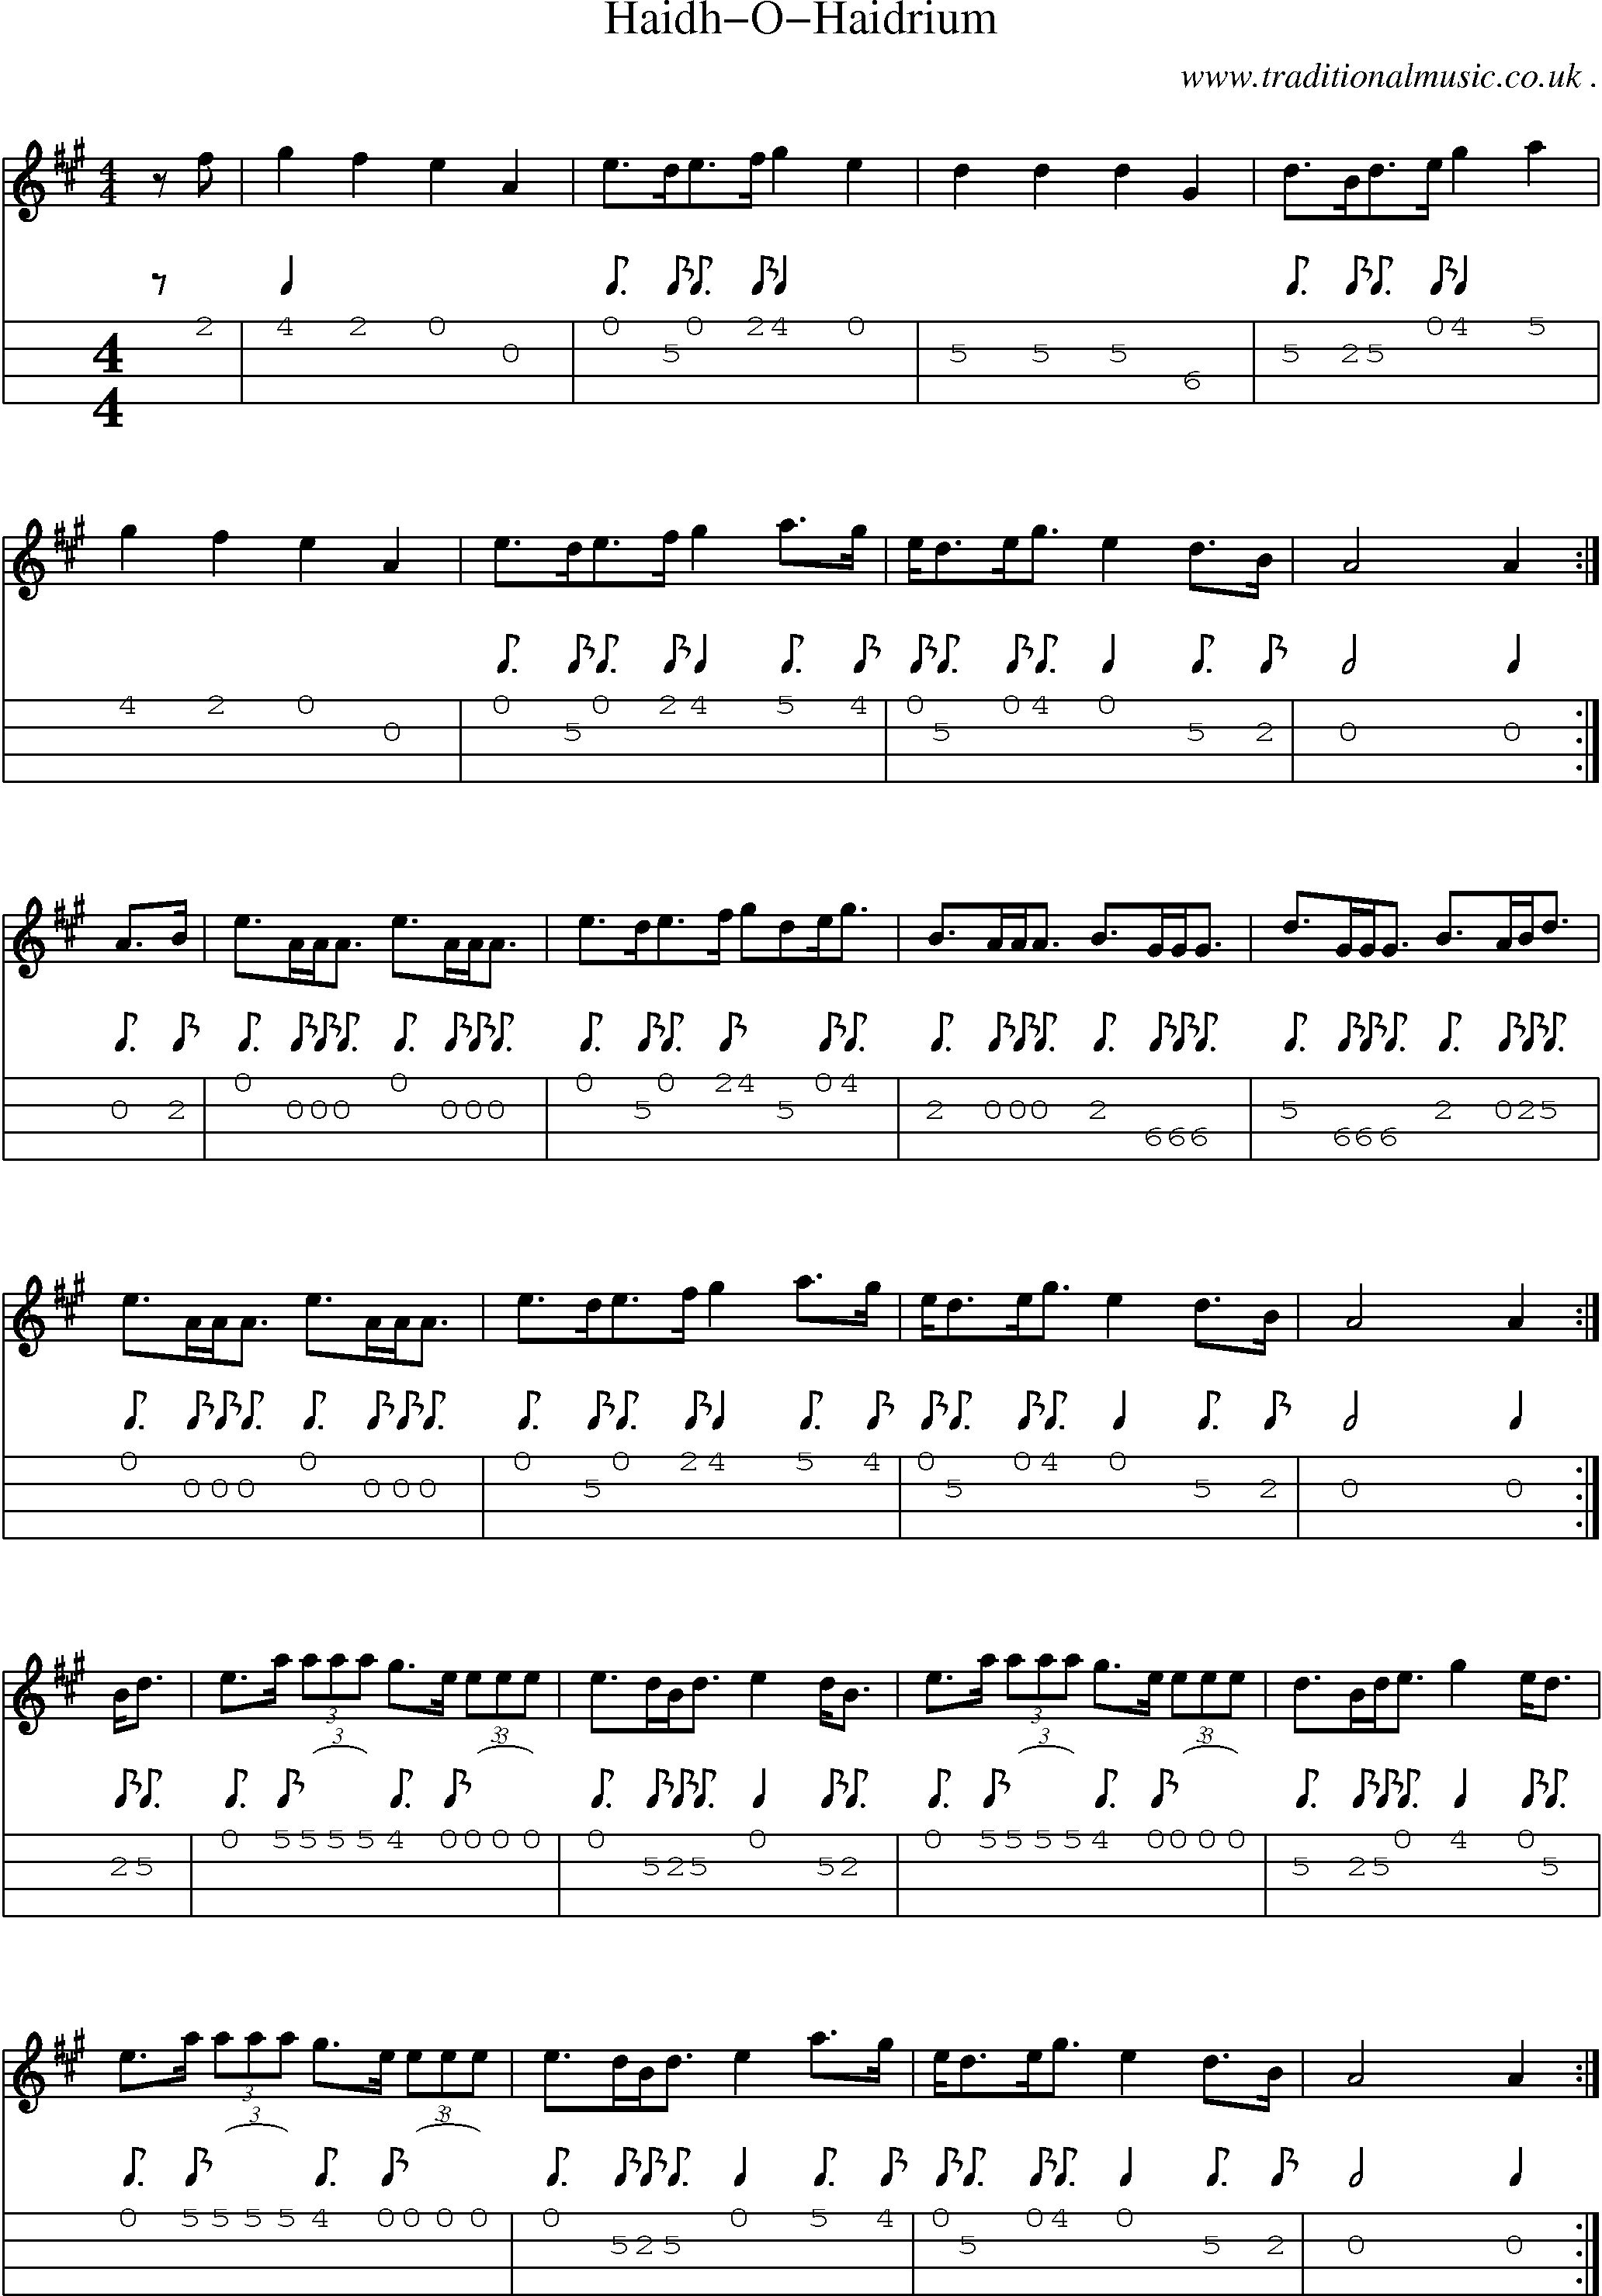 Sheet-music  score, Chords and Mandolin Tabs for Haidh-o-haidrium